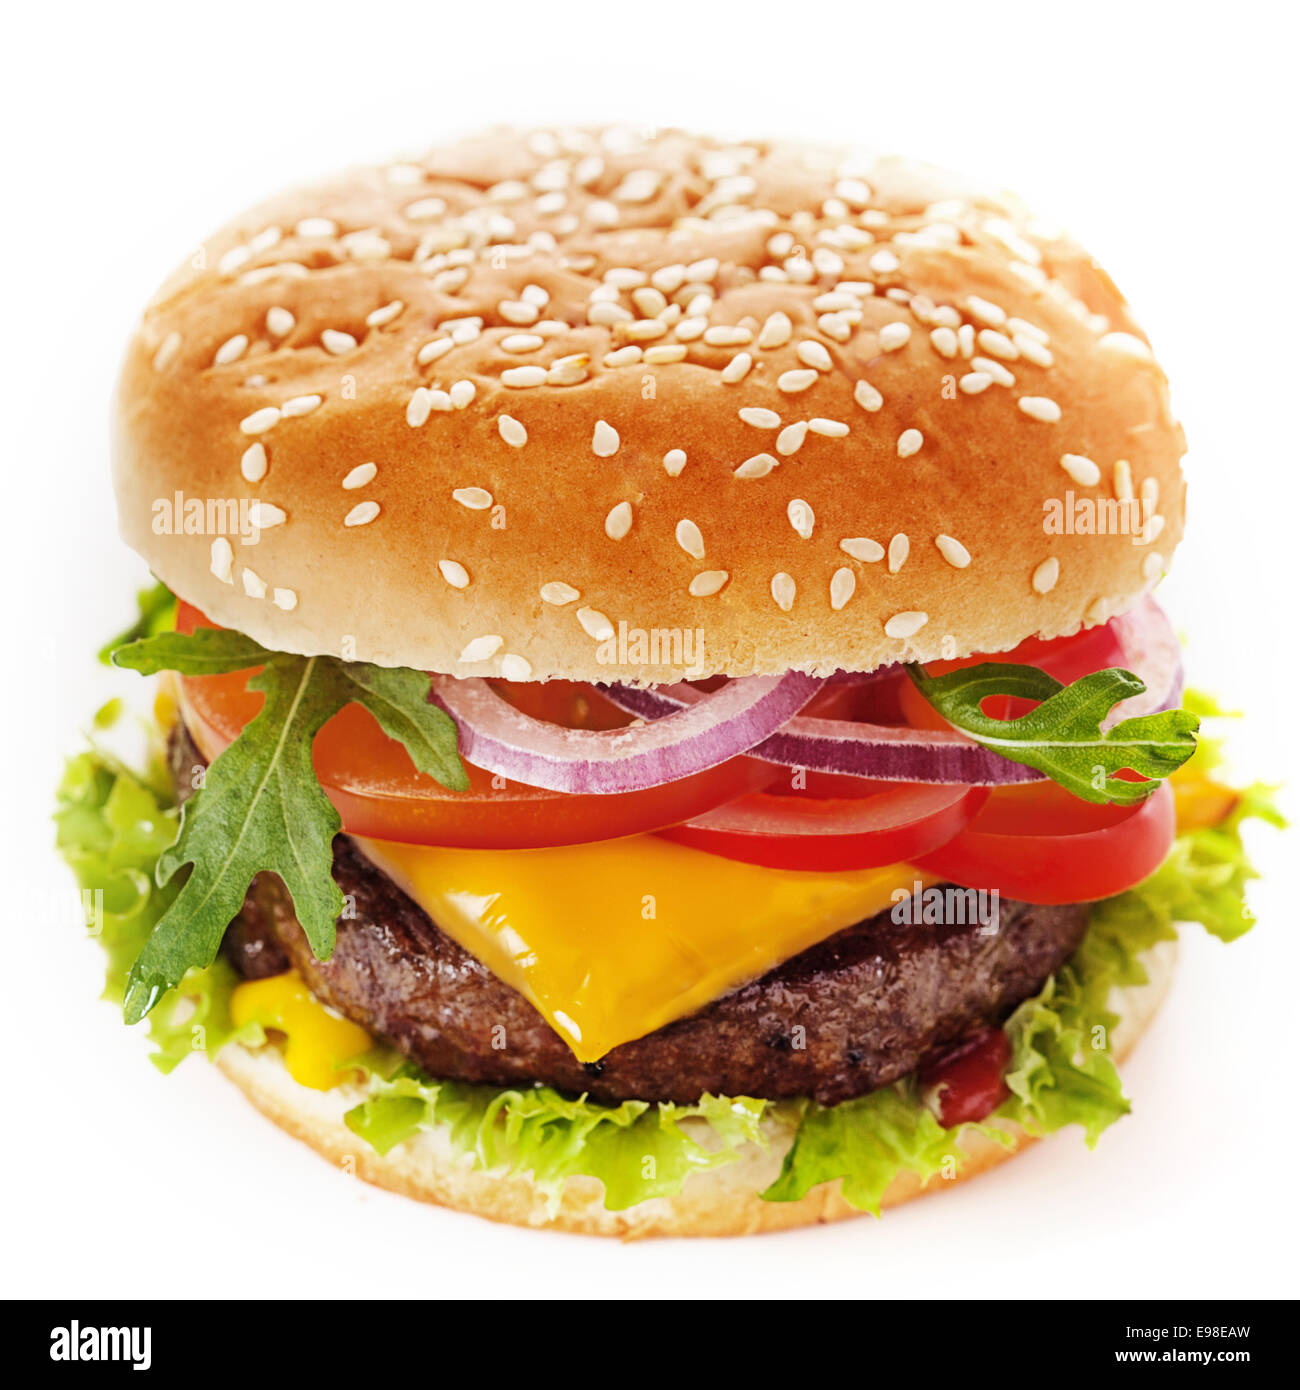 Nahaufnahme von einen leckeren Cheeseburger gemacht der grünen Salat und Boden Frikadelle garniert mit Tomatenscheiben, Zwiebel, Käse, Petersilie und süßen Ketchup, platziert in einer in Scheiben geschnittenen Hamburgerbrötchen mit Sesam Stockfoto